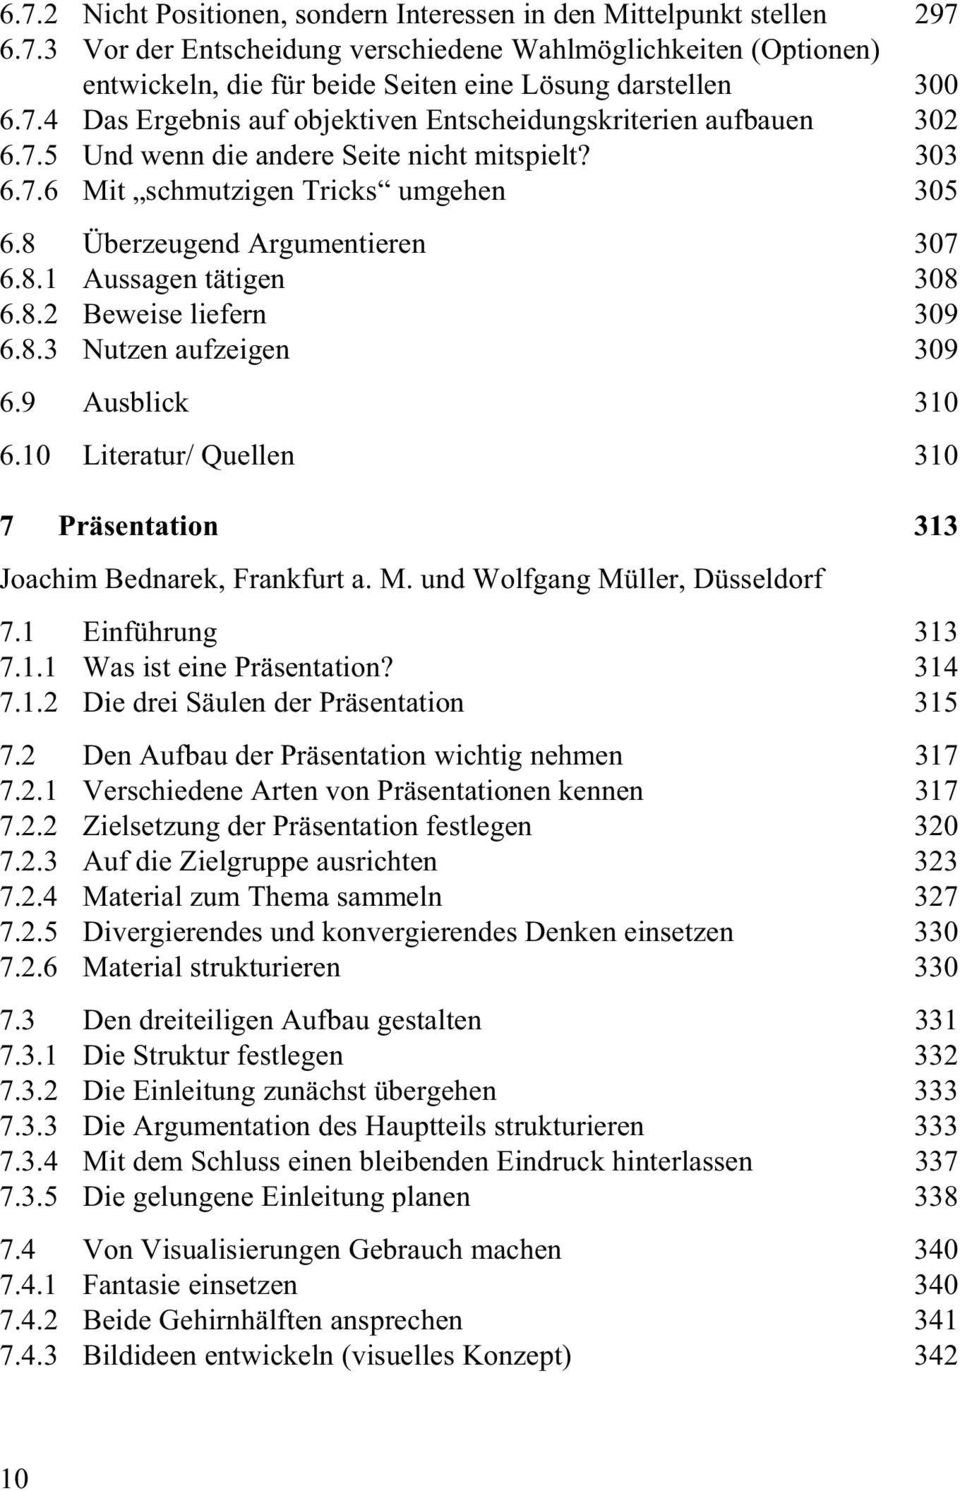 8.2 Beweise liefern 309 6.8.3 Nutzen aufzeigen 309 6.9 Ausblick 310 6.10 Literatur/ Quellen 310 7 Präsentation 313 Joachim Bednarek, Frankfurt a. M. und Wolfgang Müller, Düsseldorf 7.